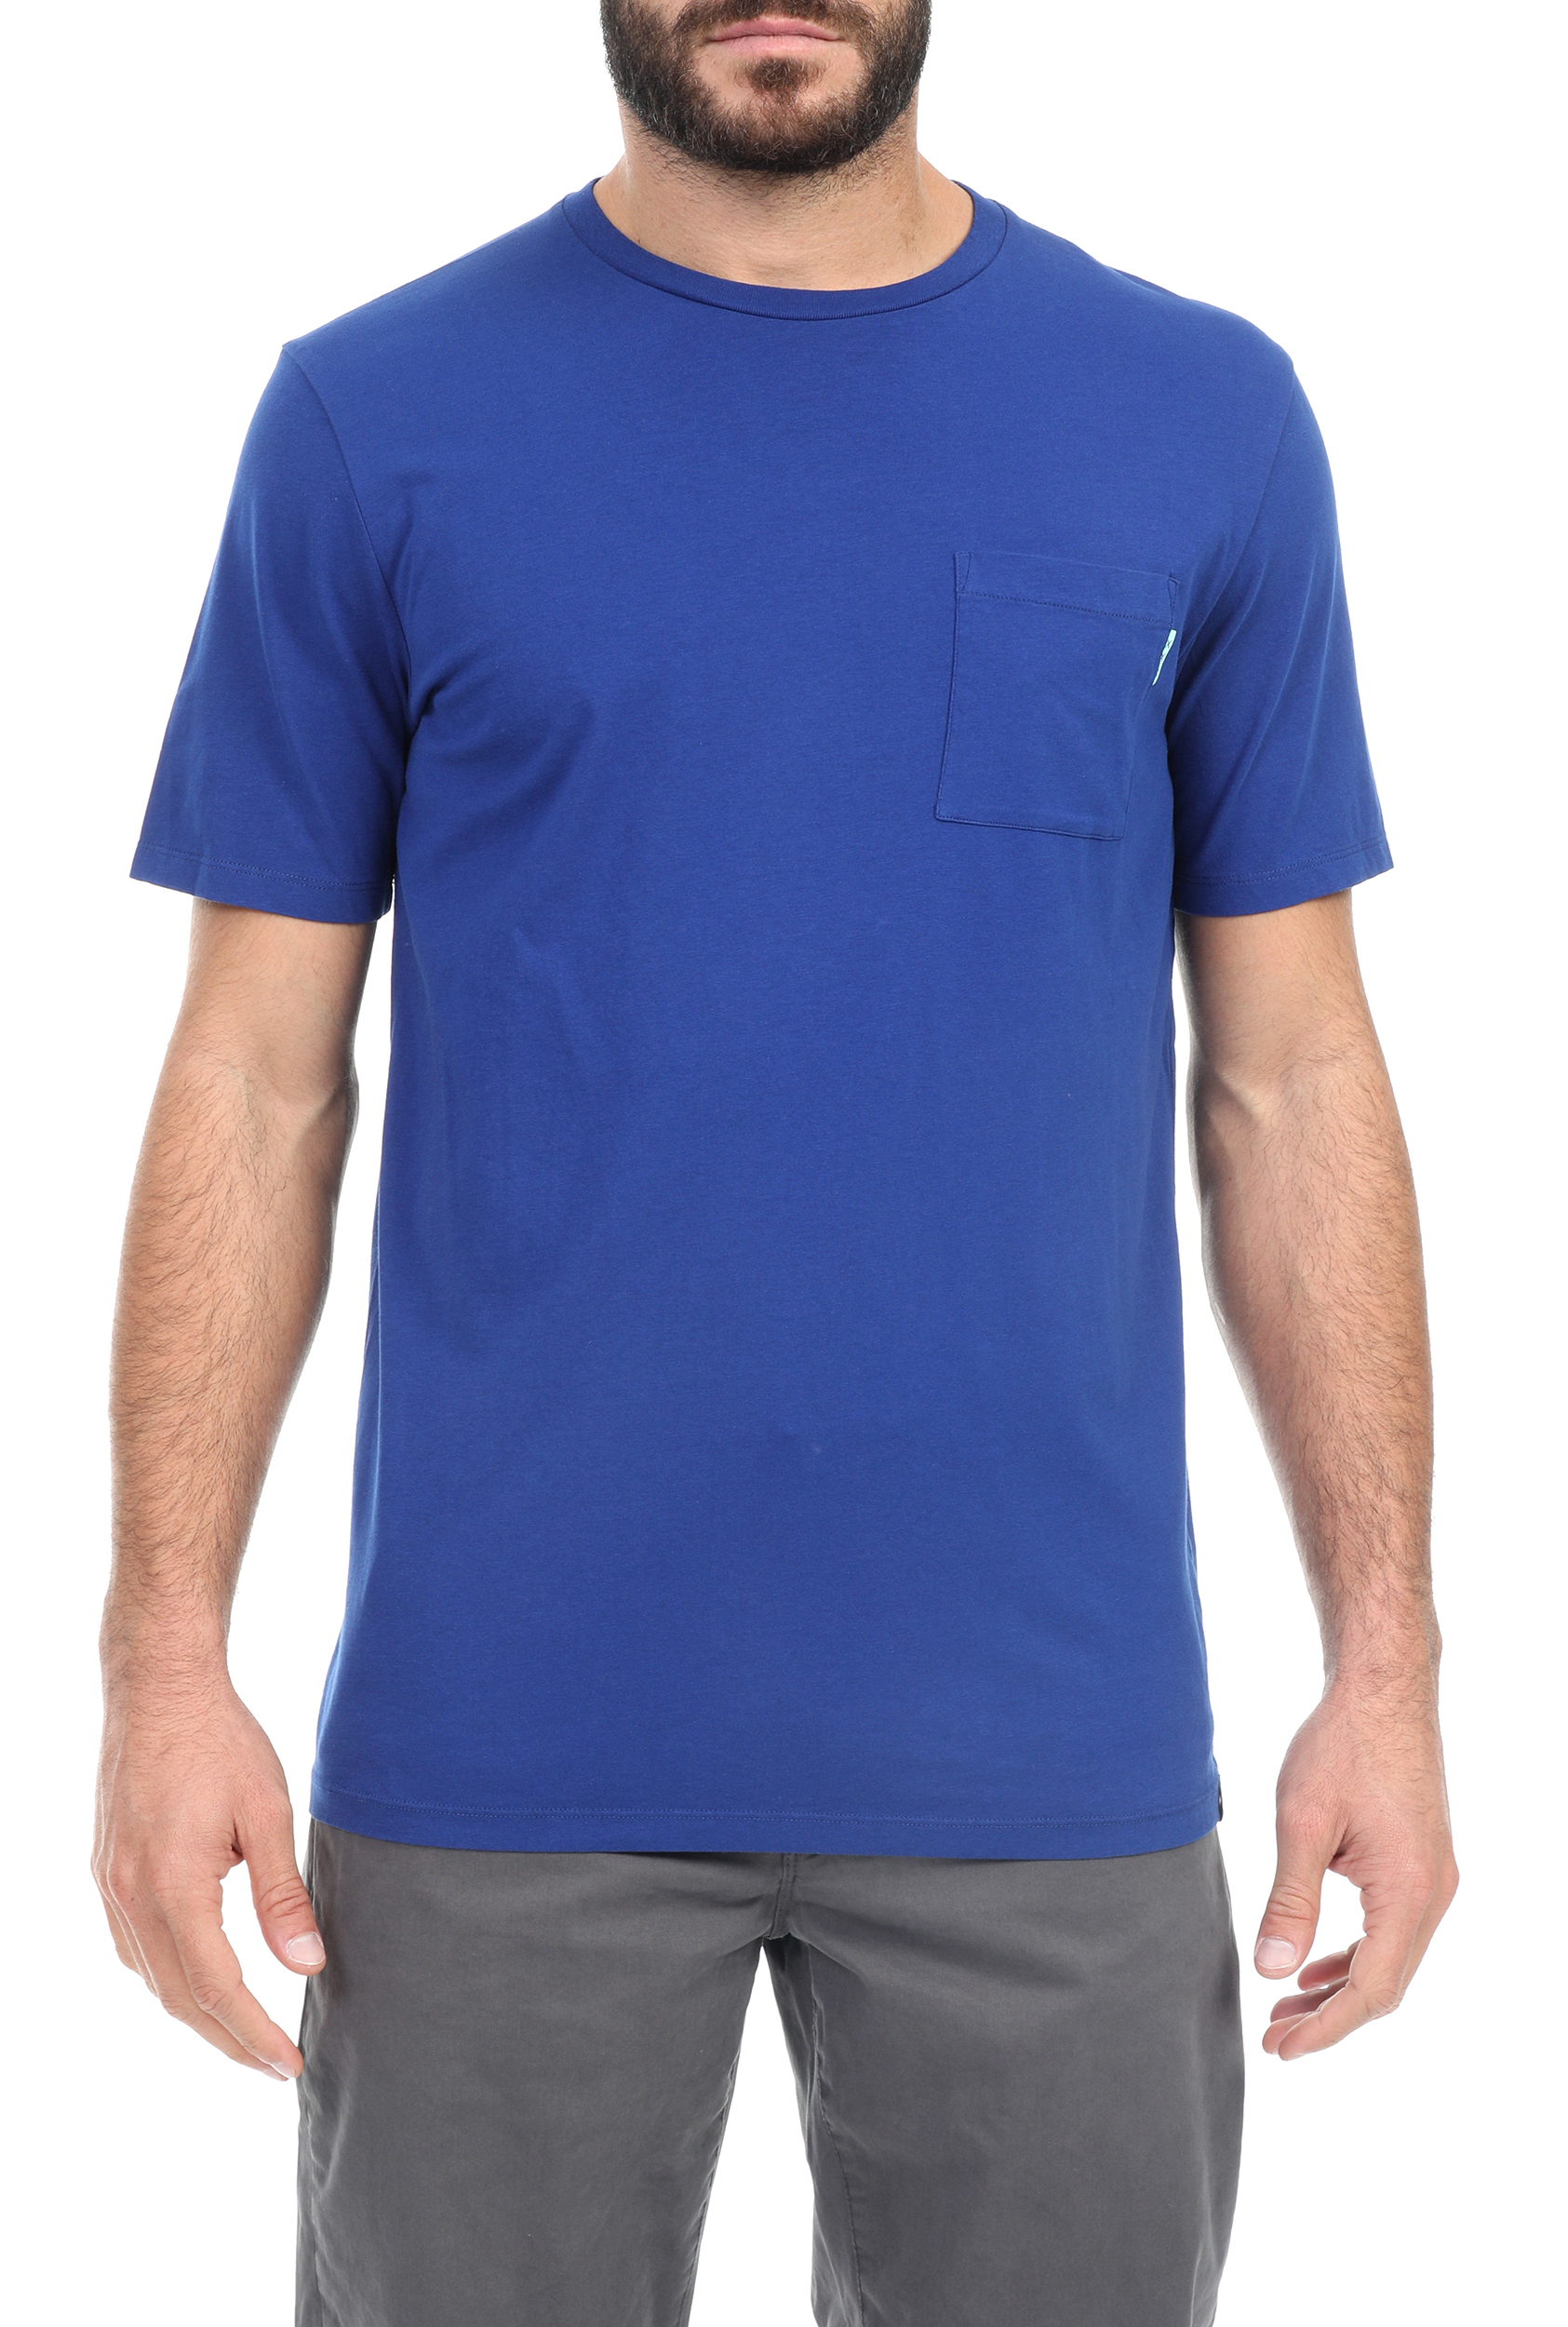 Ανδρικά/Ρούχα/Μπλούζες/Κοντομάνικες SCOTCH & SODA - Ανδρικό t-shirt SCOTCH & SODA μπλε